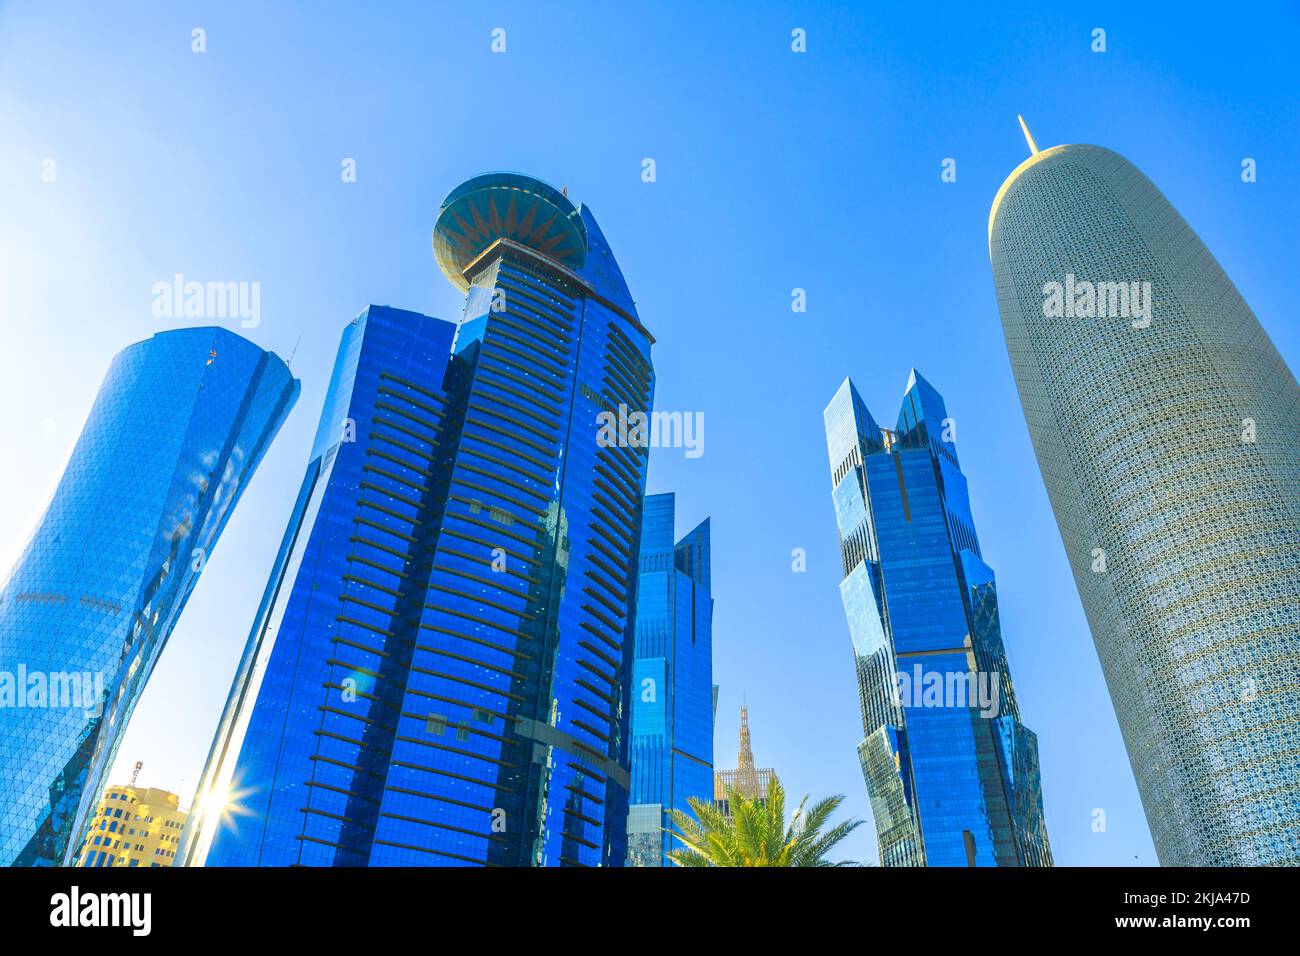 Doha, Katar - 20. Februar 2019: Blick von unten auf den Al Fardan Towers Complex und den Doha Tower, berühmte verglaste Hochhäuser in West Bay. Wolkenkratzer von Stockfoto